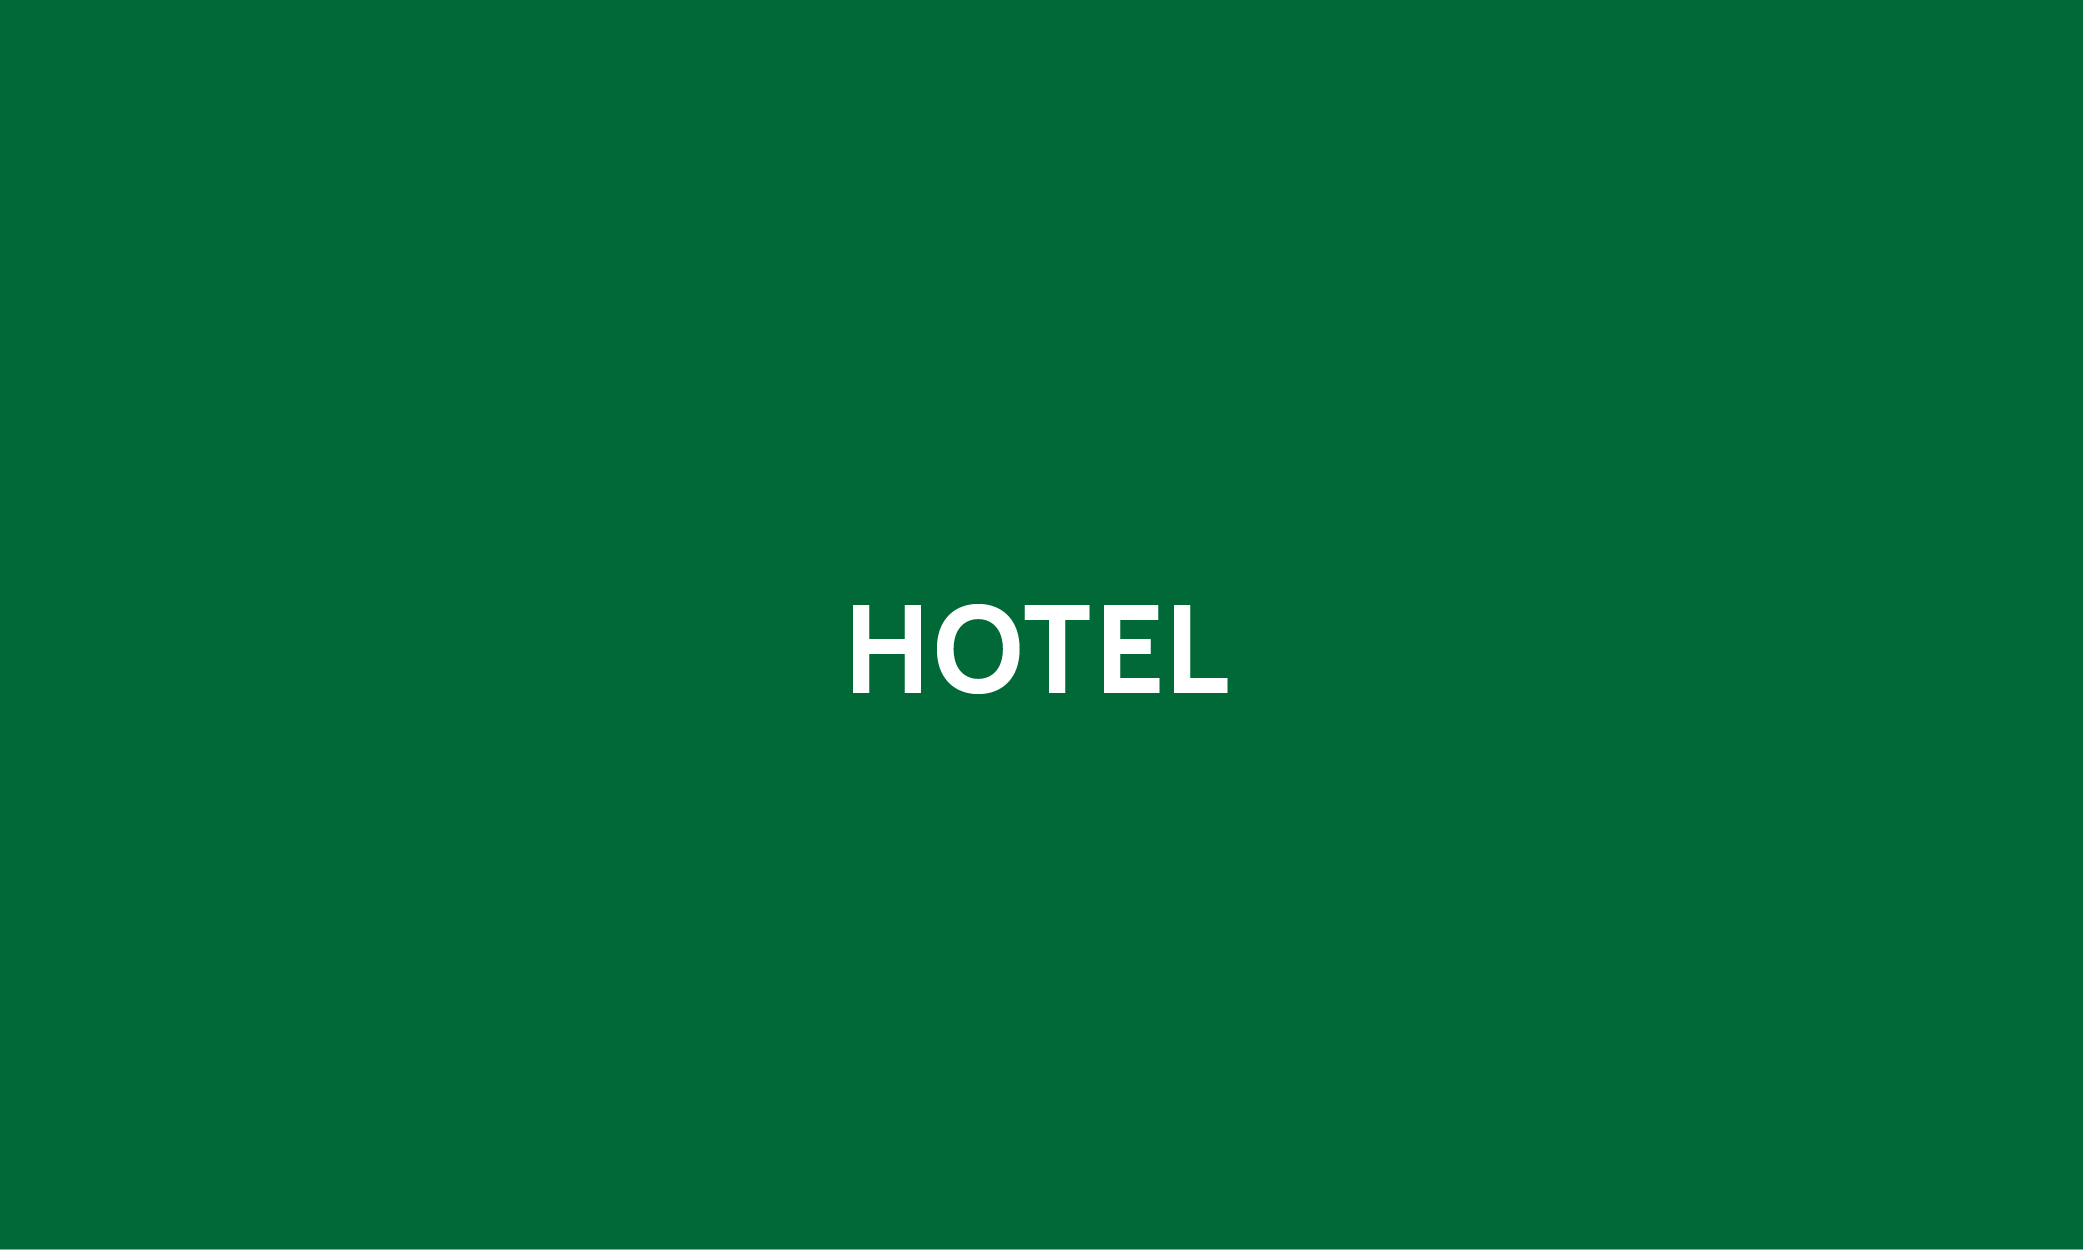 MSFV_Hotel-01